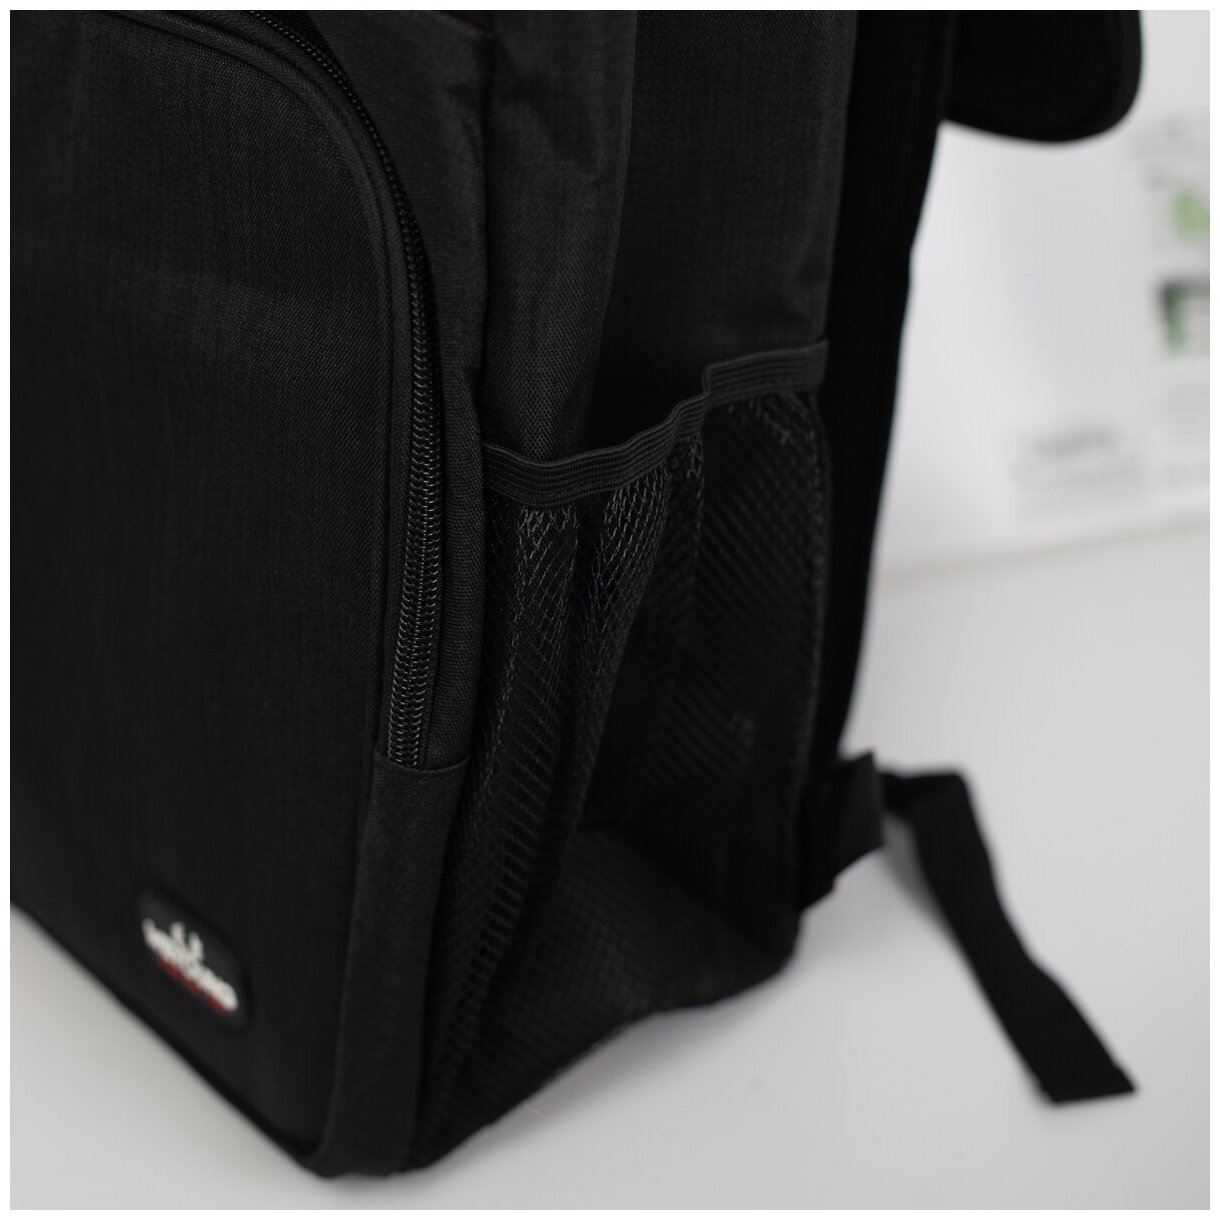 Кемпинг-рюкзак с изолированными отделениями, черный, Shamoon SM-KR-01